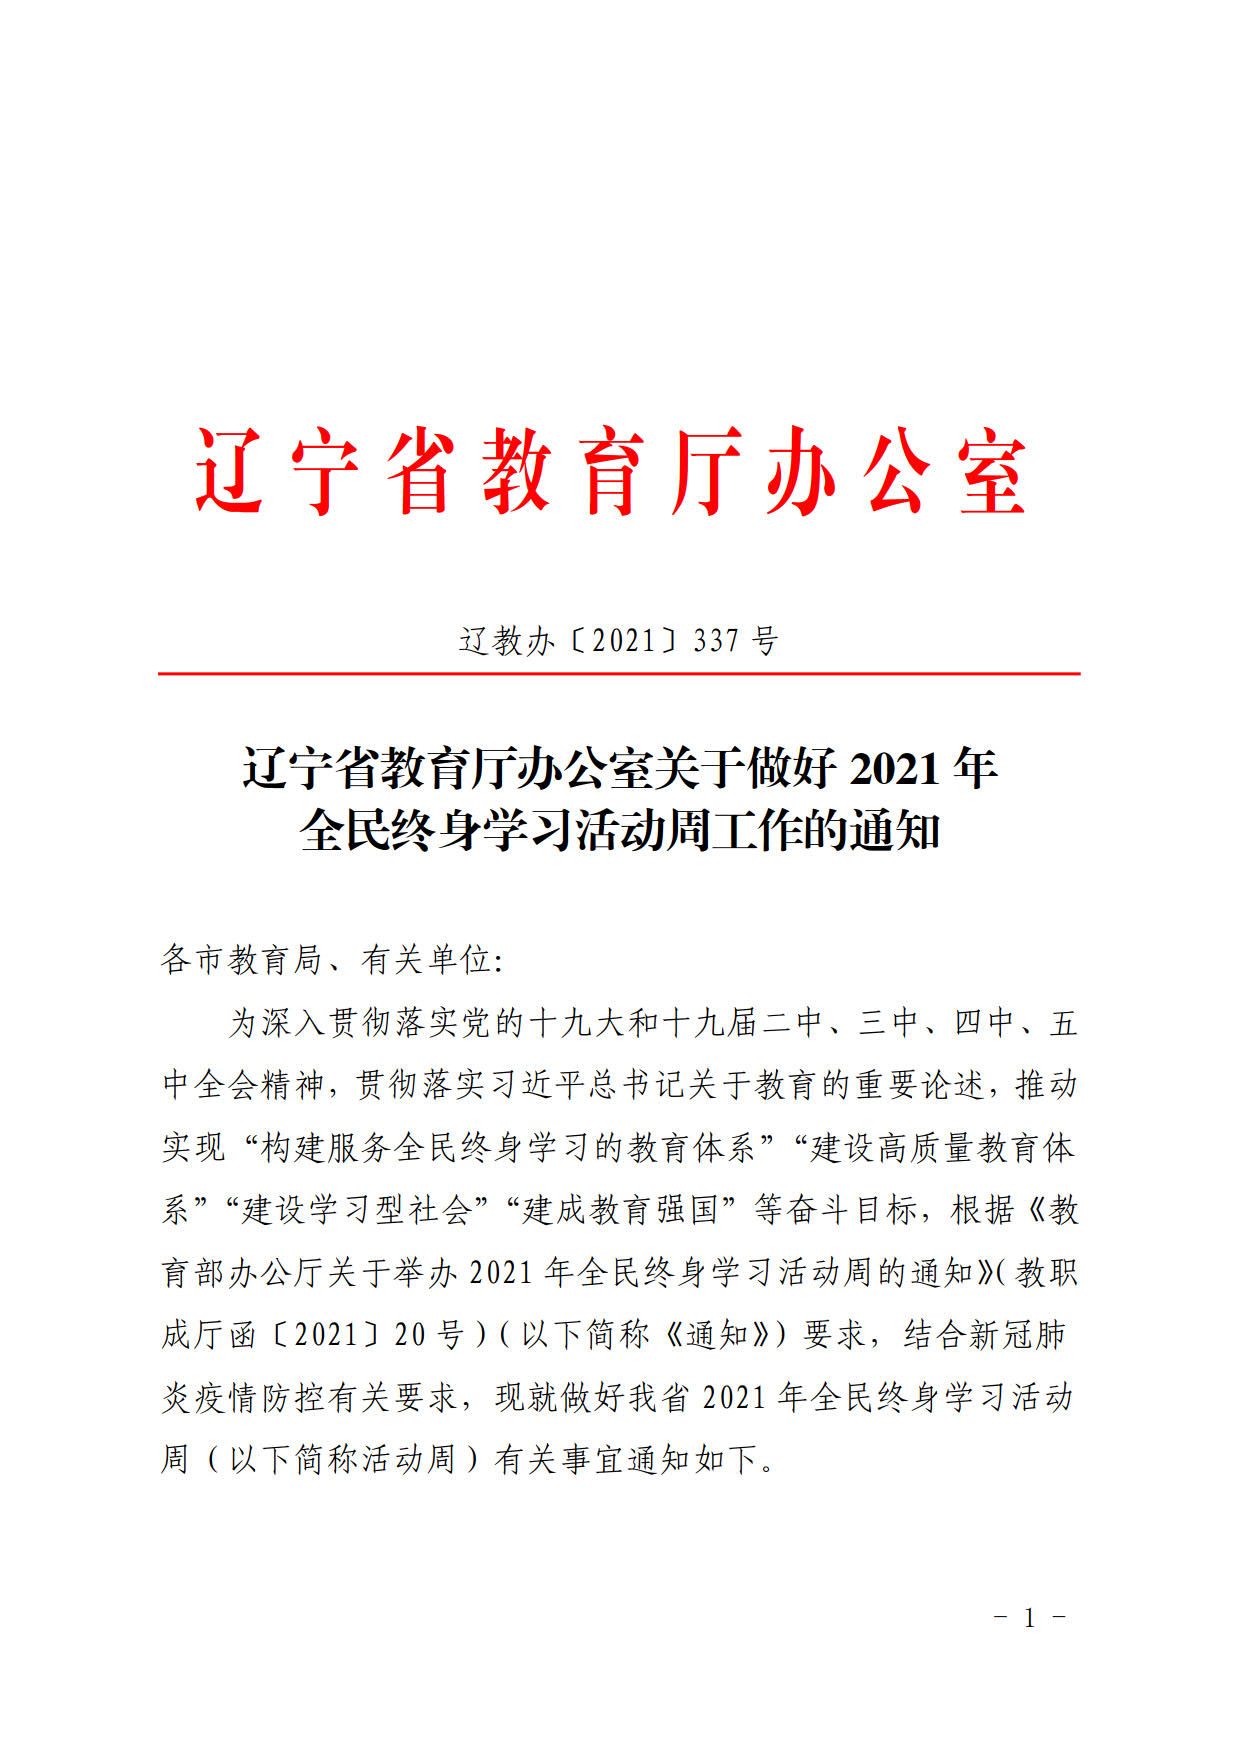 辽宁省教育厅办公室关于做好2021年全民终身学习活动周工作的通知(2)_2.jpg